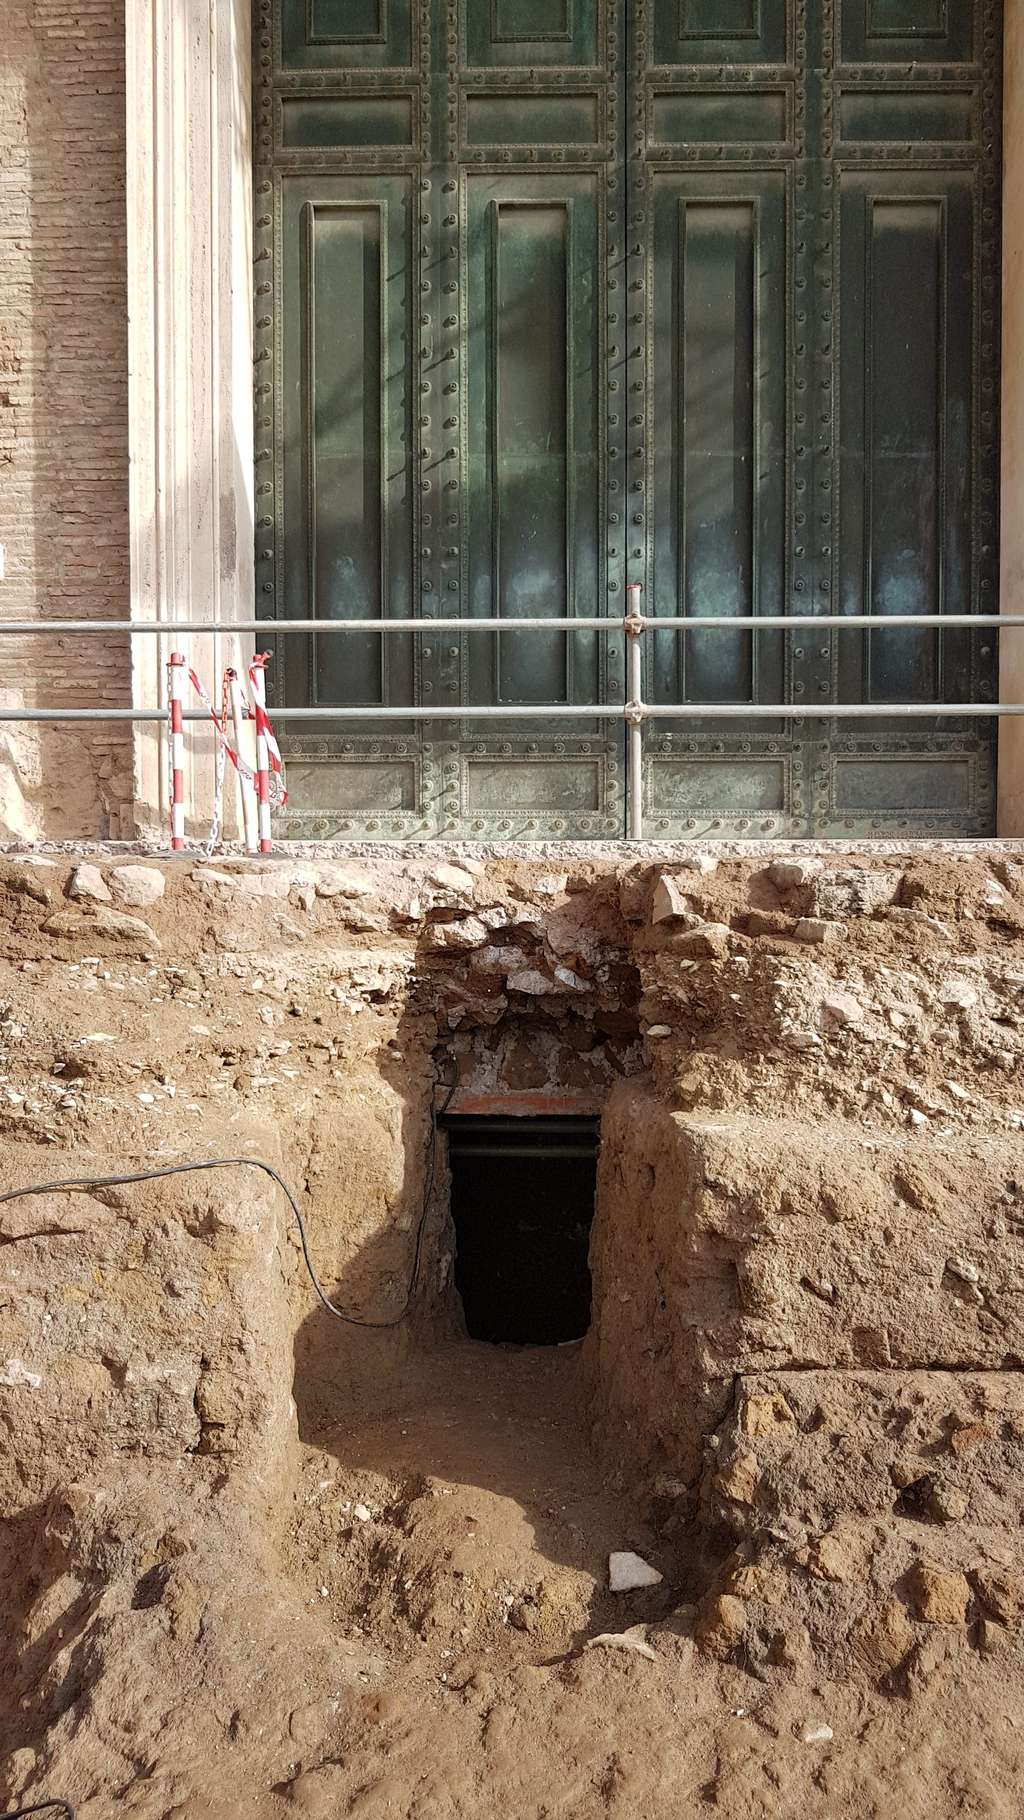 L'entrée d'un tombeau qui pourrait être celui de Romulus, le roi fondateur de Rome. © Handout, <em>Archaeological park of the Colosseum</em>, Parcolosseo, AFP